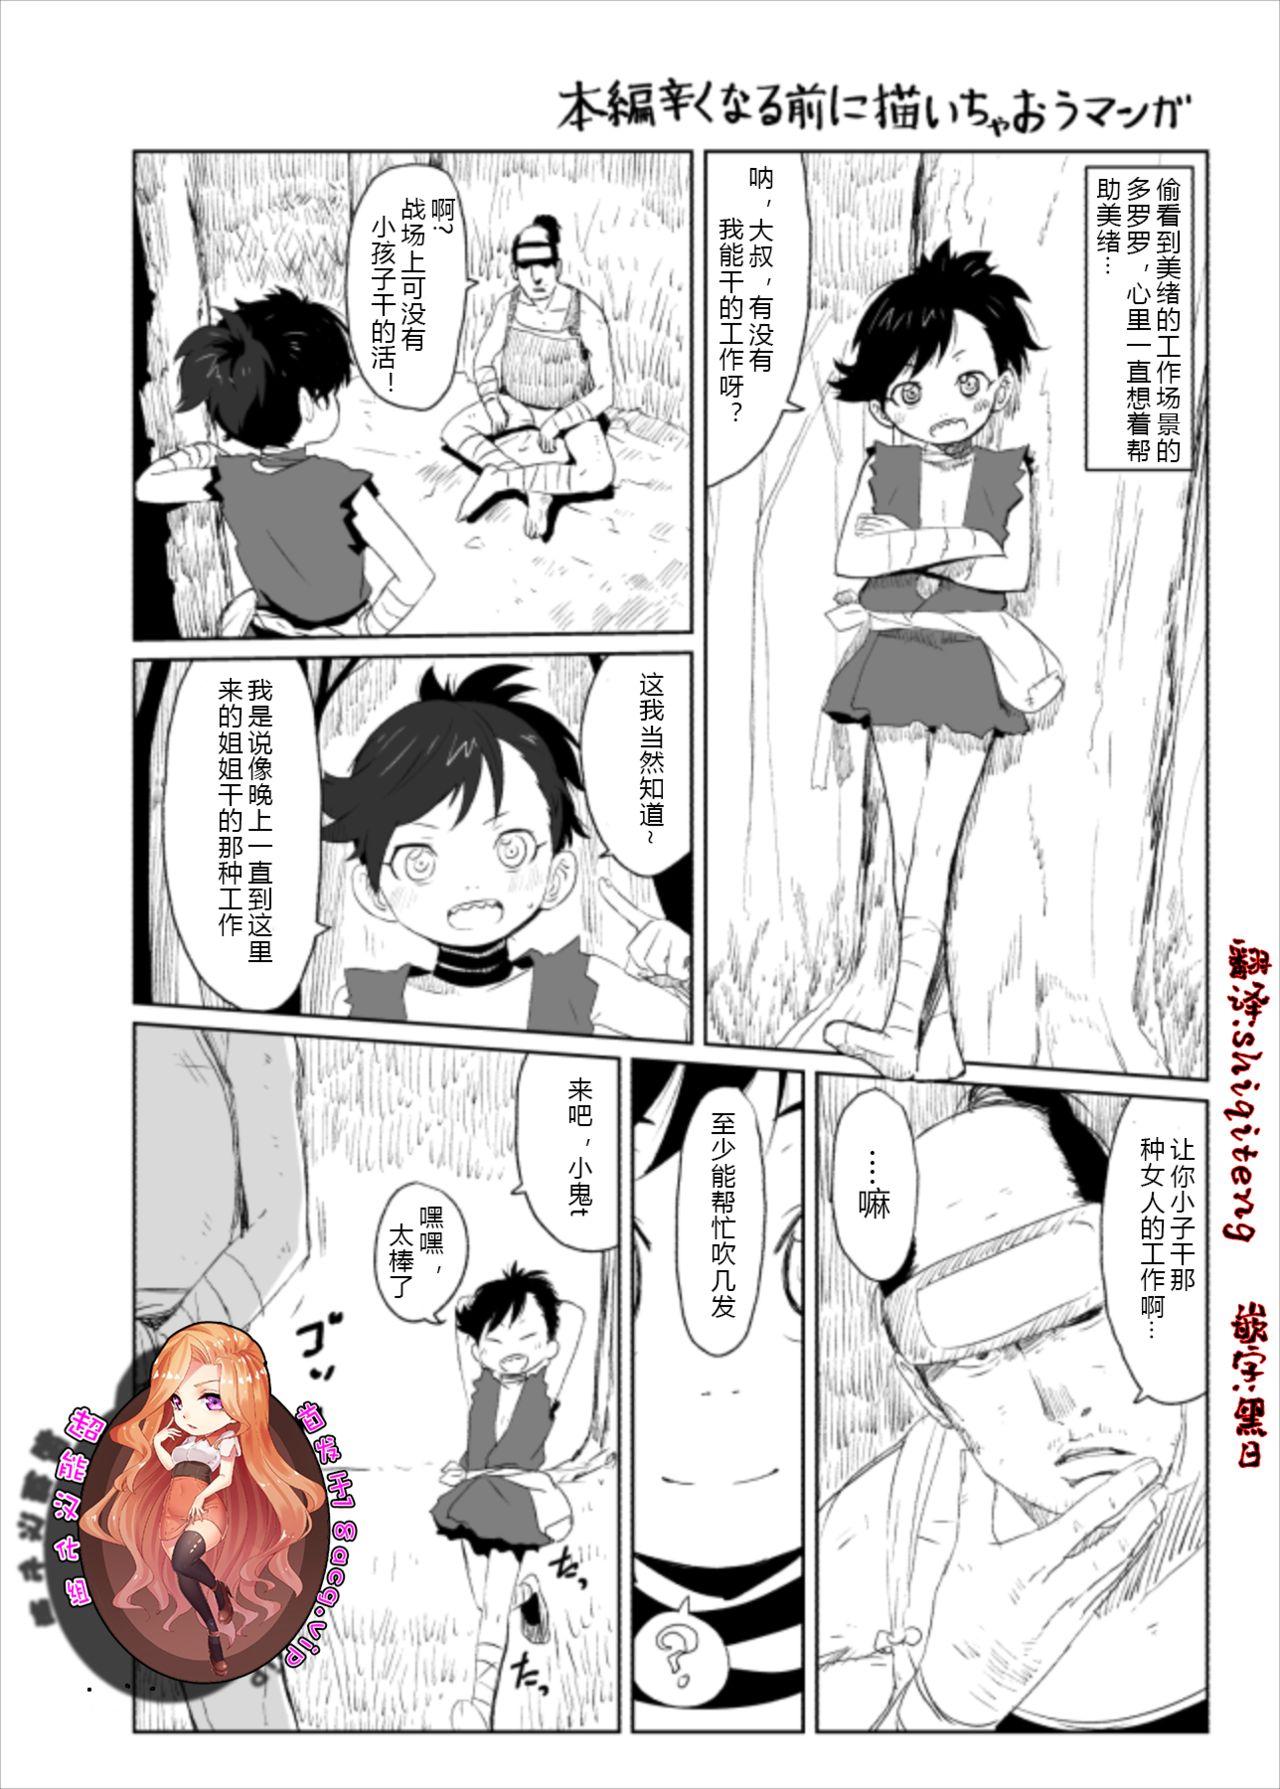 Cock Suckers Dororo Rakugaki Echi Manga - Dororo Best Blow Job - Page 1